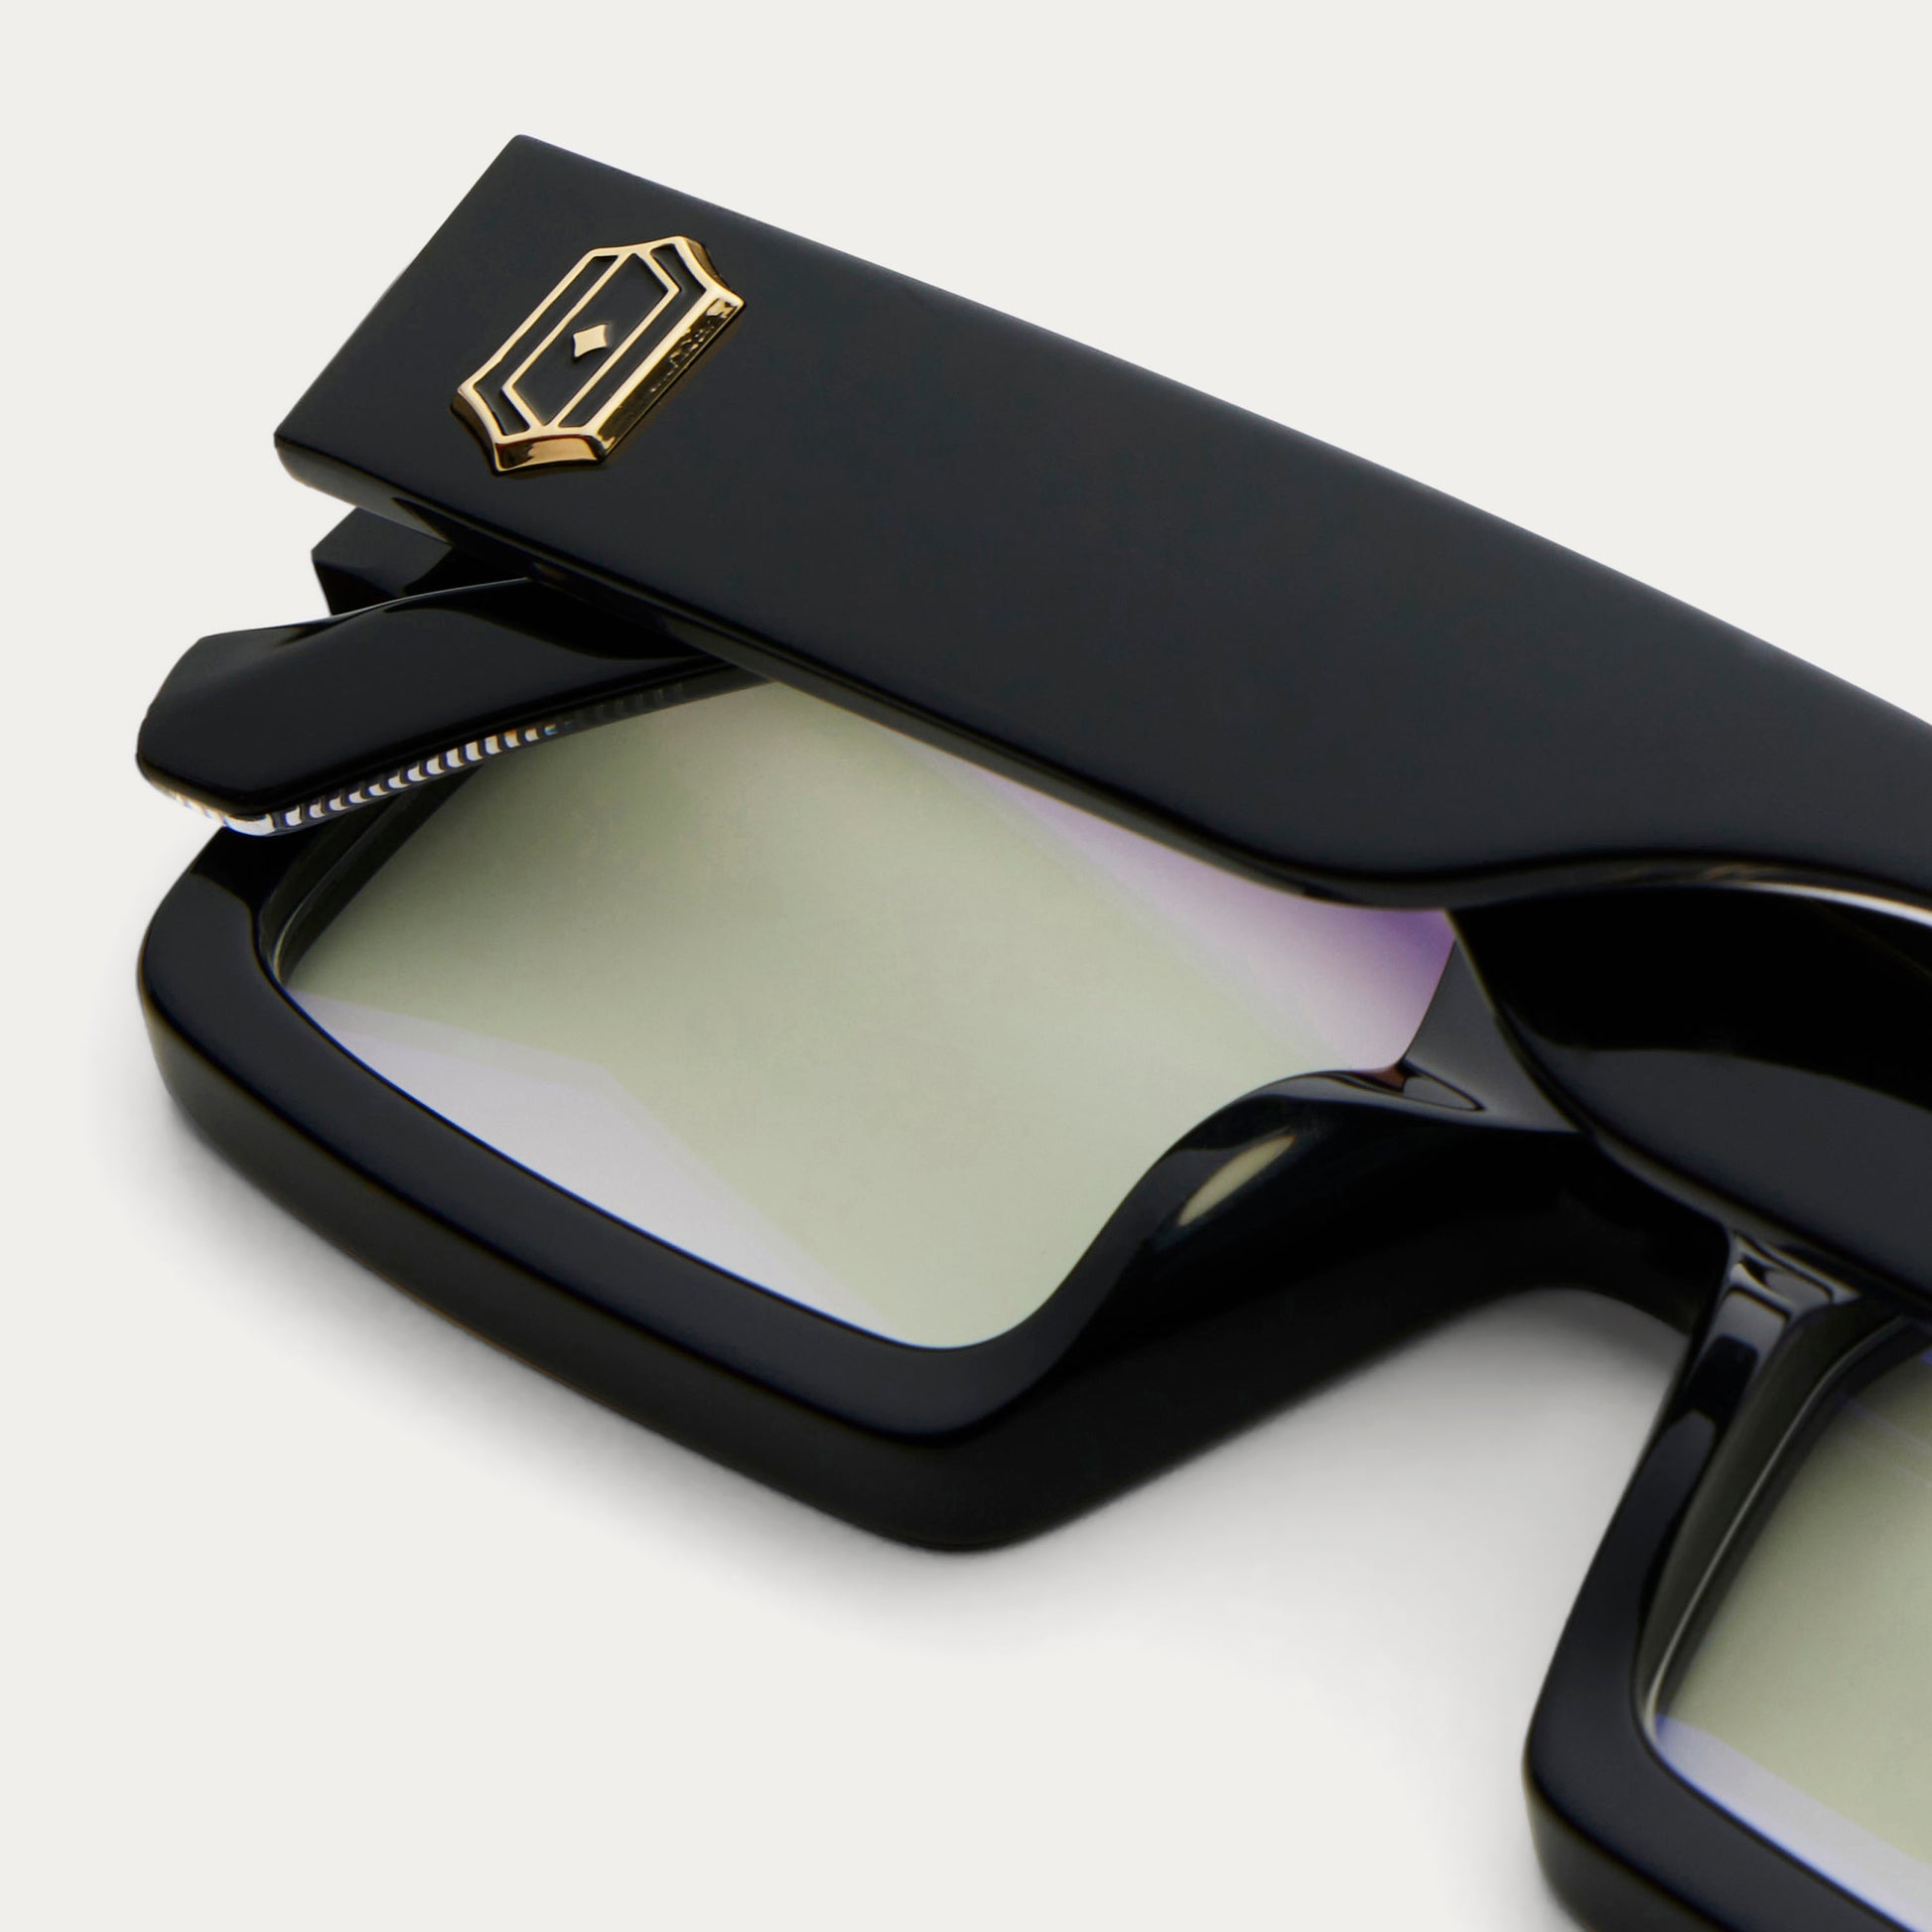 Louis Vuitton 1.1 millionaires sunglasses (Z1165E)